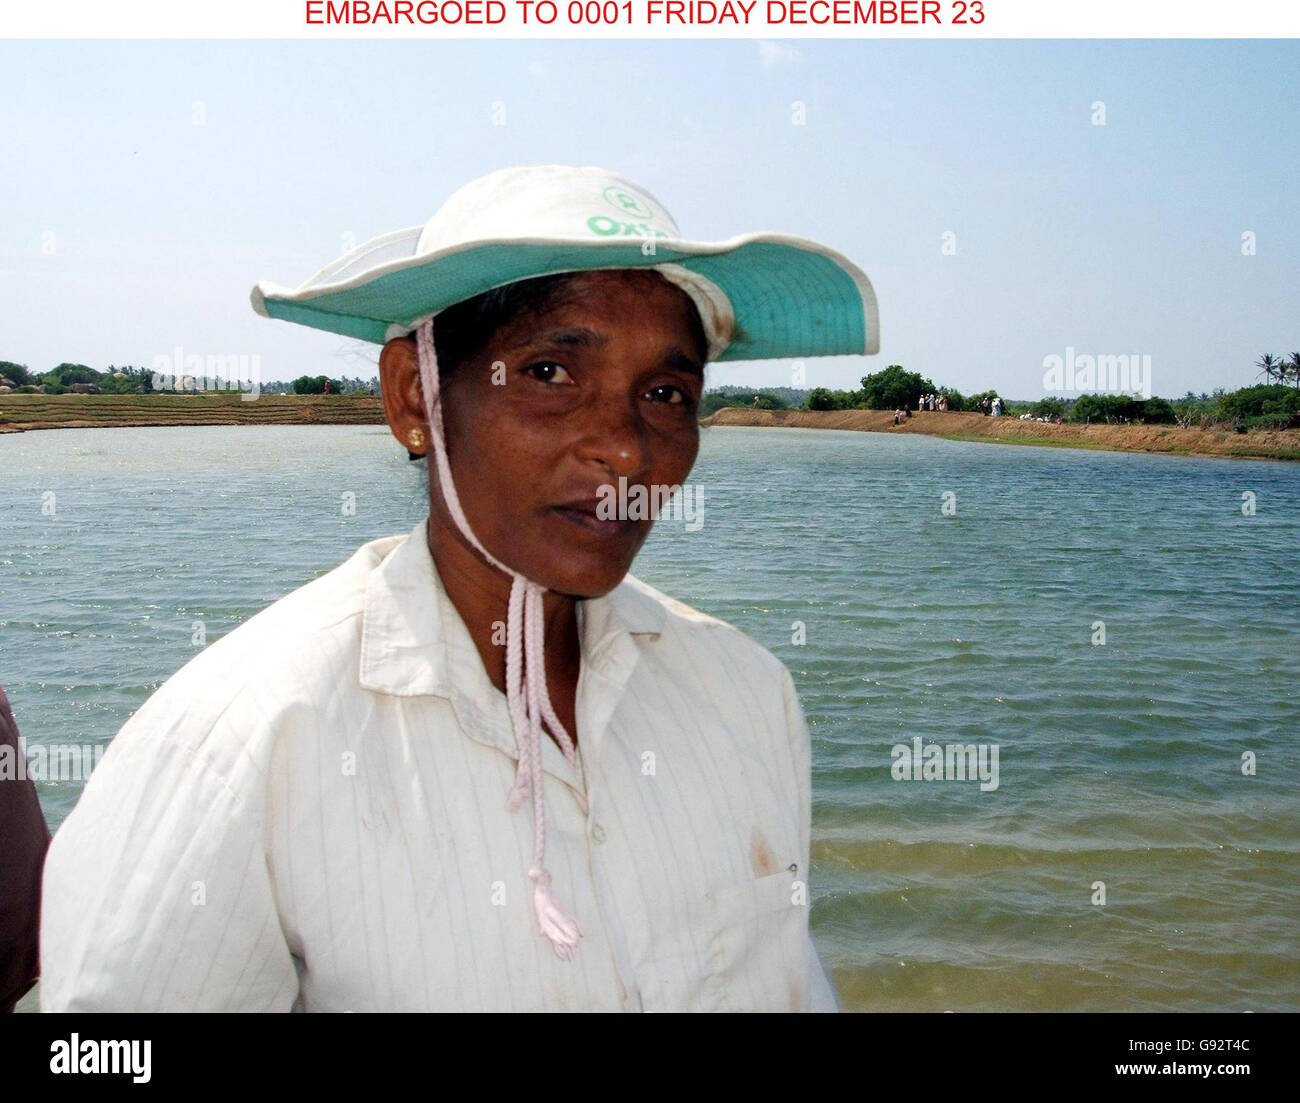 Die Ehefrau von Fisherman Senadhipathige Pushpalath hilft einem Rückkehrprojekt in der Nähe von Yala in Sri Lanka, als Teil von Oxfams Cash for Work-Programm, nachdem das Geschäft ihres Mannes beim letztjährigen Tsunami am zweiten Weihnachtsfeiertag zerstört wurde. Fast acht von 10 Menschen in Großbritannien spendeten in diesem Jahr für einen karitativen Notruf, wie eine Umfrage am Freitag, den 23. Dezember 2005 ergab. Die Umfrage des Britischen Roten Kreuzes ergab, dass 79 % im Jahr 2005 gespendet hatten, und 75 % der Befragten gaben an, dies erneut zu tun. Siehe PA Story DEATH Quake. DRÜCKEN SIE VERBANDSFOTO. Bildnachweis sollte lauten: Victoria Mitchell Stockfoto